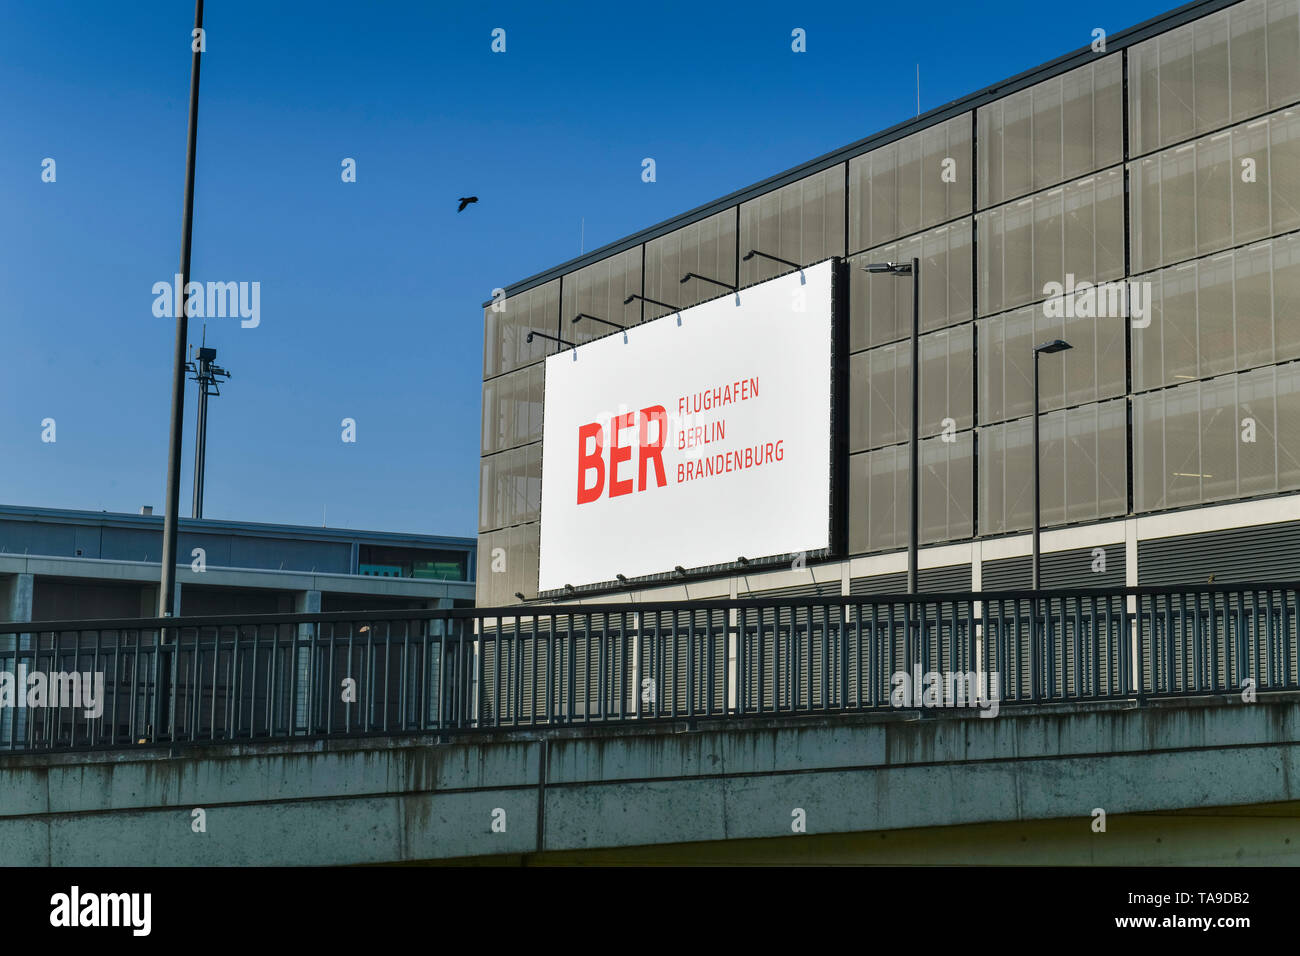 'Multi-plantas de aparcamiento, el aeropuerto de Berlin Brandenburg ''Willy Brandt'' REP., Brandenburgo, Alemania", Parkhaus, Flughafen Berlin Brandenburg "Willy Bran Foto de stock